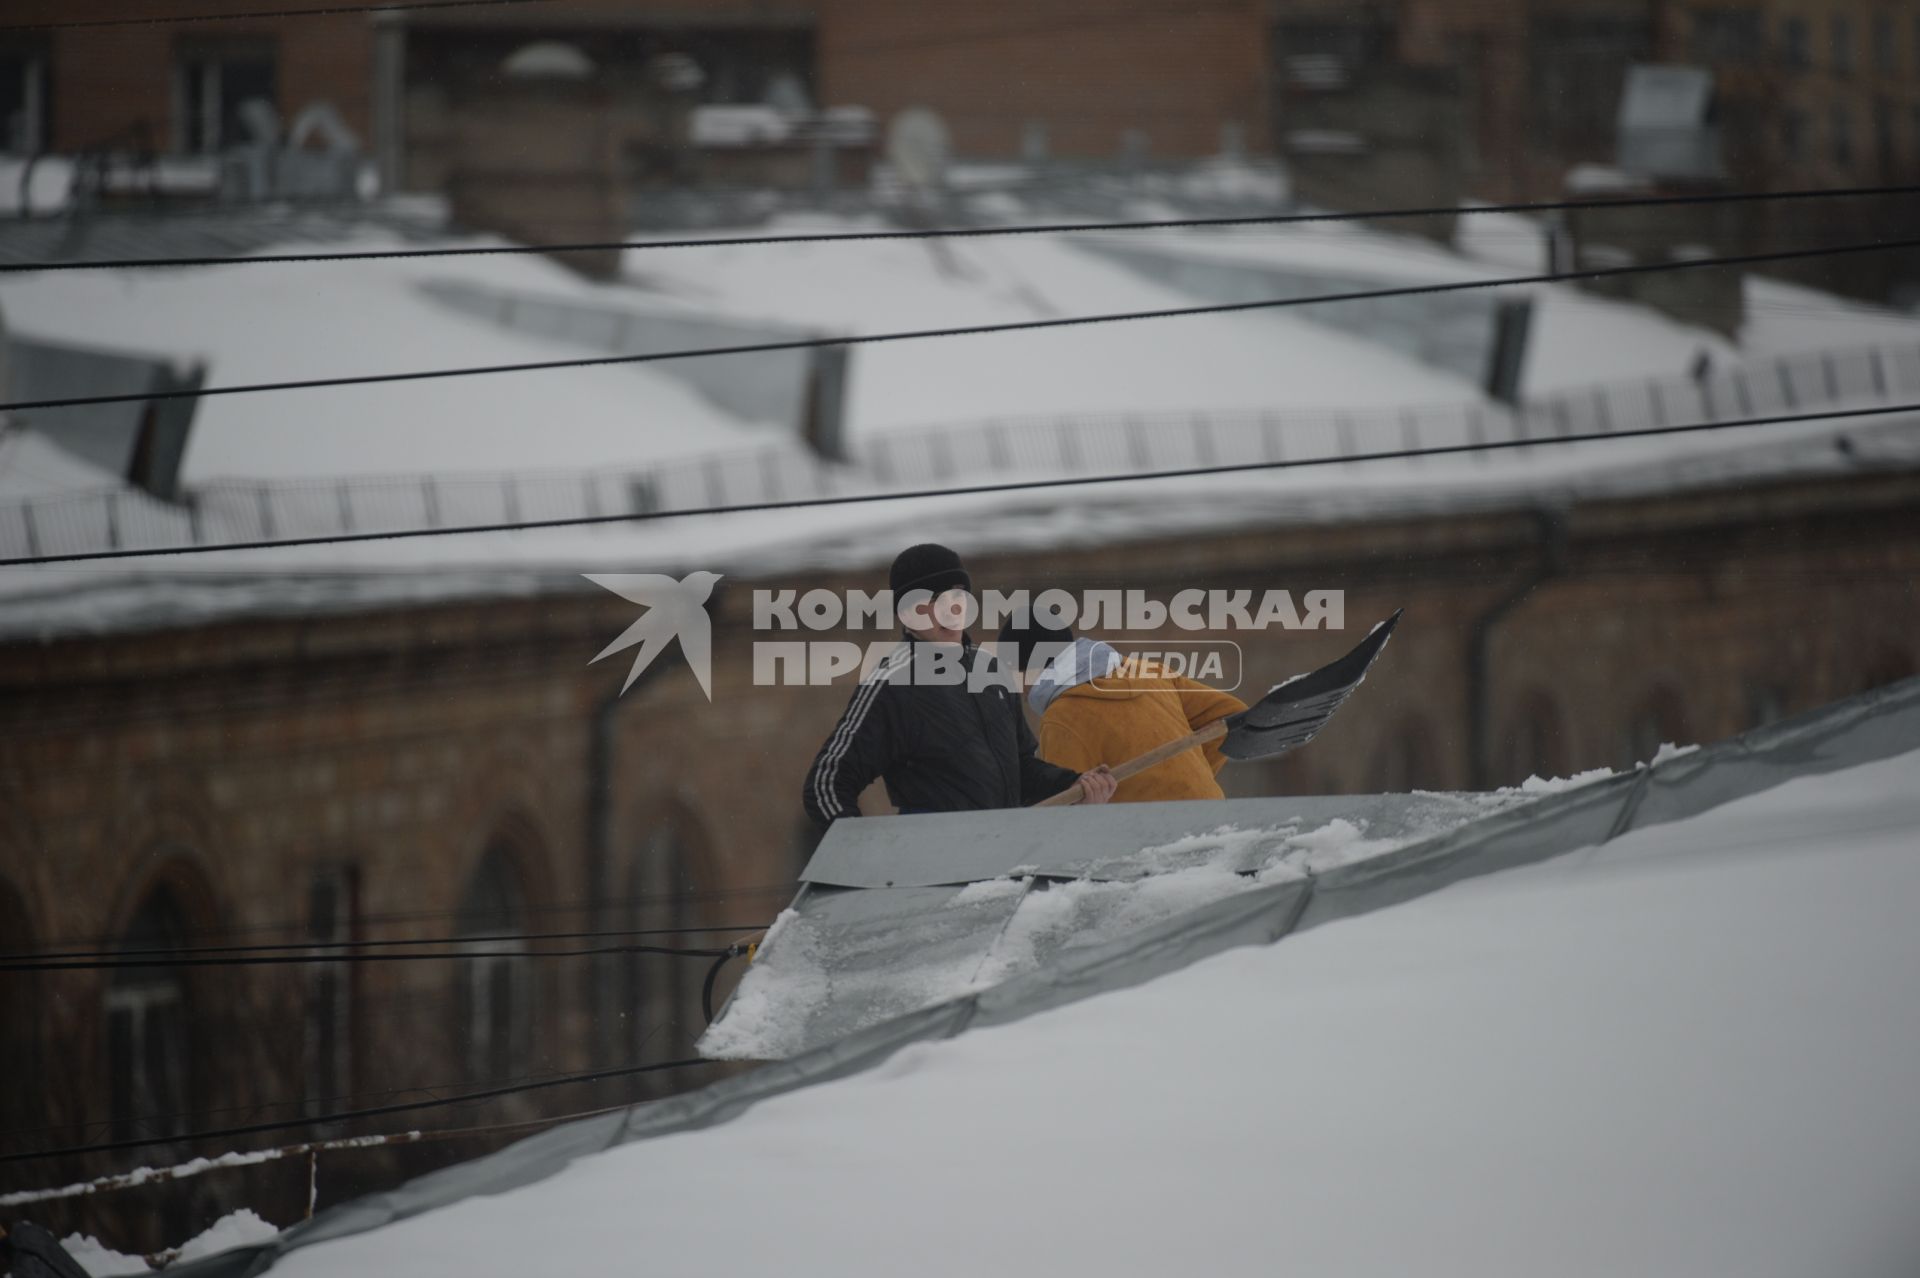 Москва. Сотрудники коммунальной службы счищают снег с крыши дома.